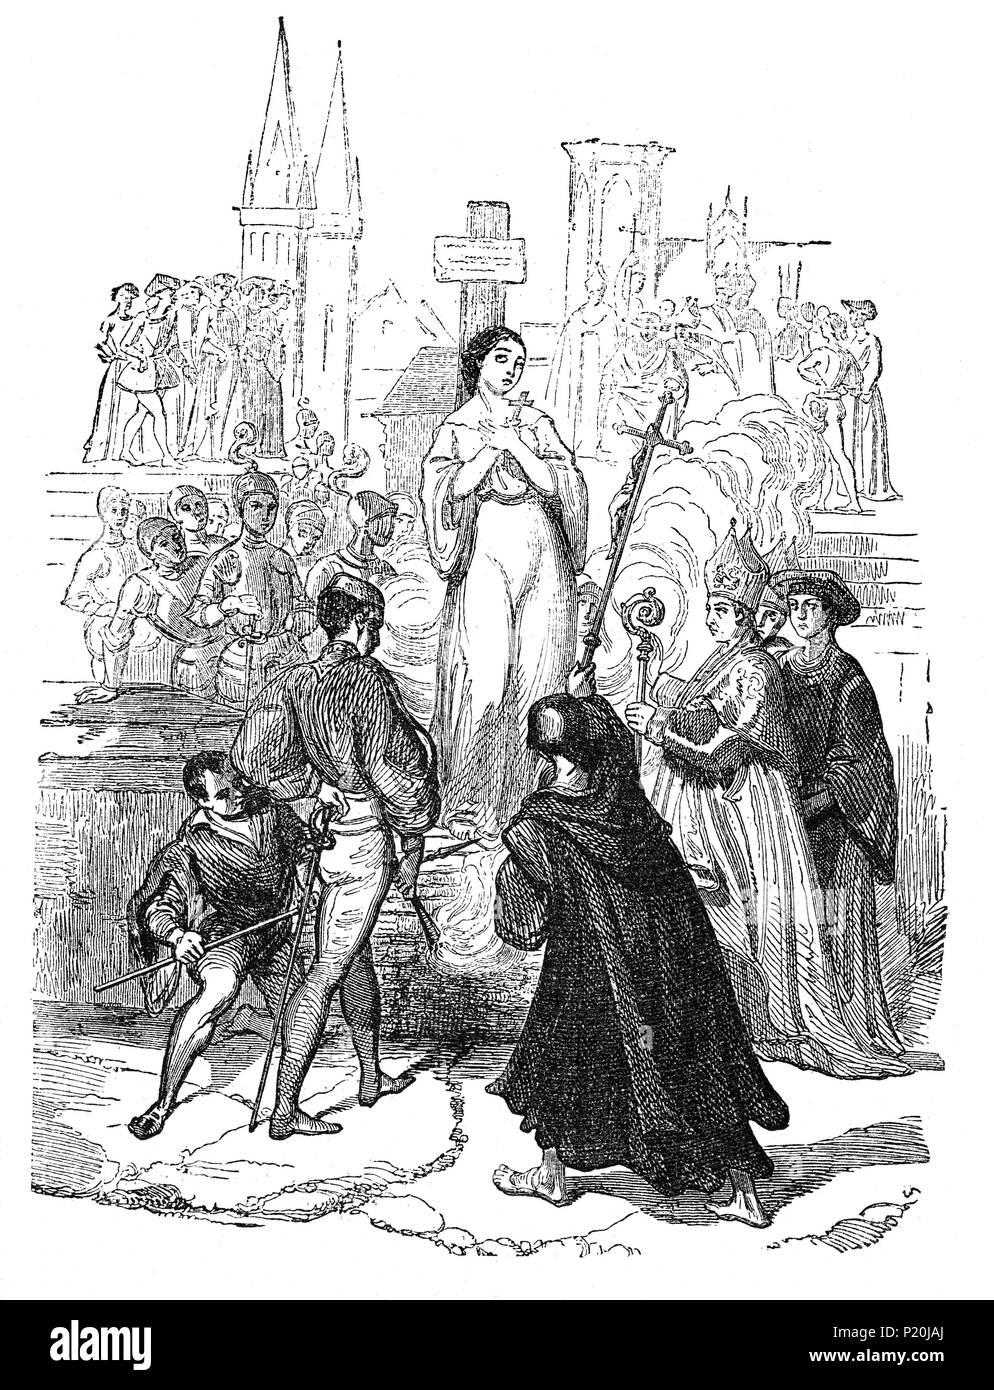 L'exécution de Jeanne d'Arc (1412-1431), alias 'La Pucelle d'Orléans' par le feu le 30 mai 1431. Lié à un grand pilier au Vieux-Marché de Rouen, elle a demandé à deux des membres du clergé, le P. Martin Ladvenu et Fr Isambart de la pierre, de tenir un crucifix devant elle. Un soldat a également construit une petite croix qu'elle a mis dans l'avant de sa robe. Les Anglais ont brûlé le corps deux fois plus, pour le réduire en cendres et empêcher toute collection de reliques, et jeté son corps dans la Seine. Banque D'Images